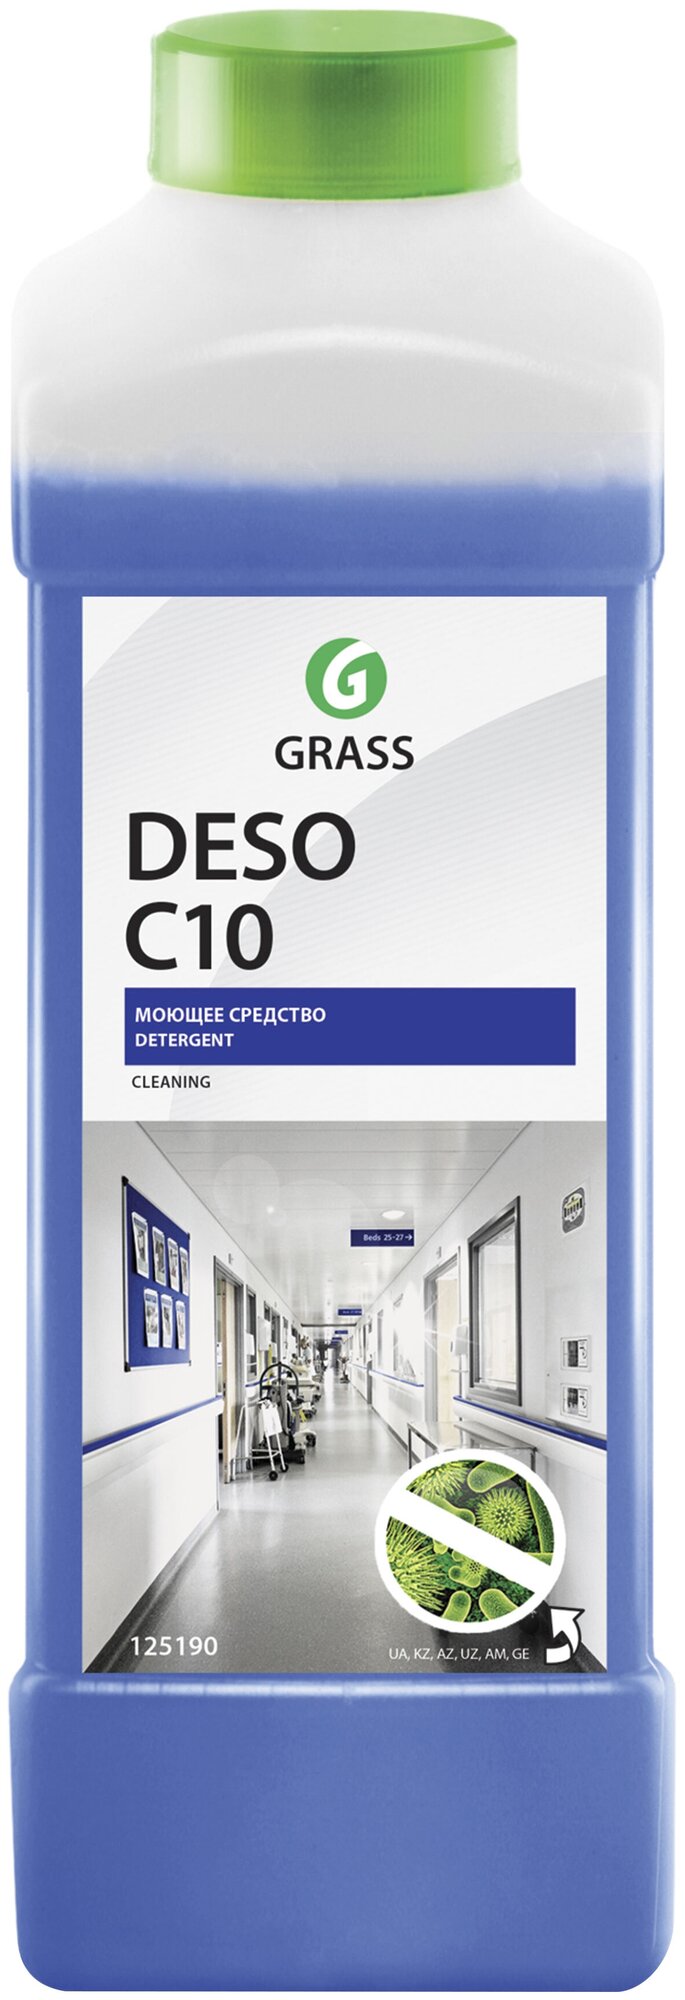 GRASS 125190 125190 GraSS Средство для чистки и дезинфекции "Deso C10" (канистра 1 л)